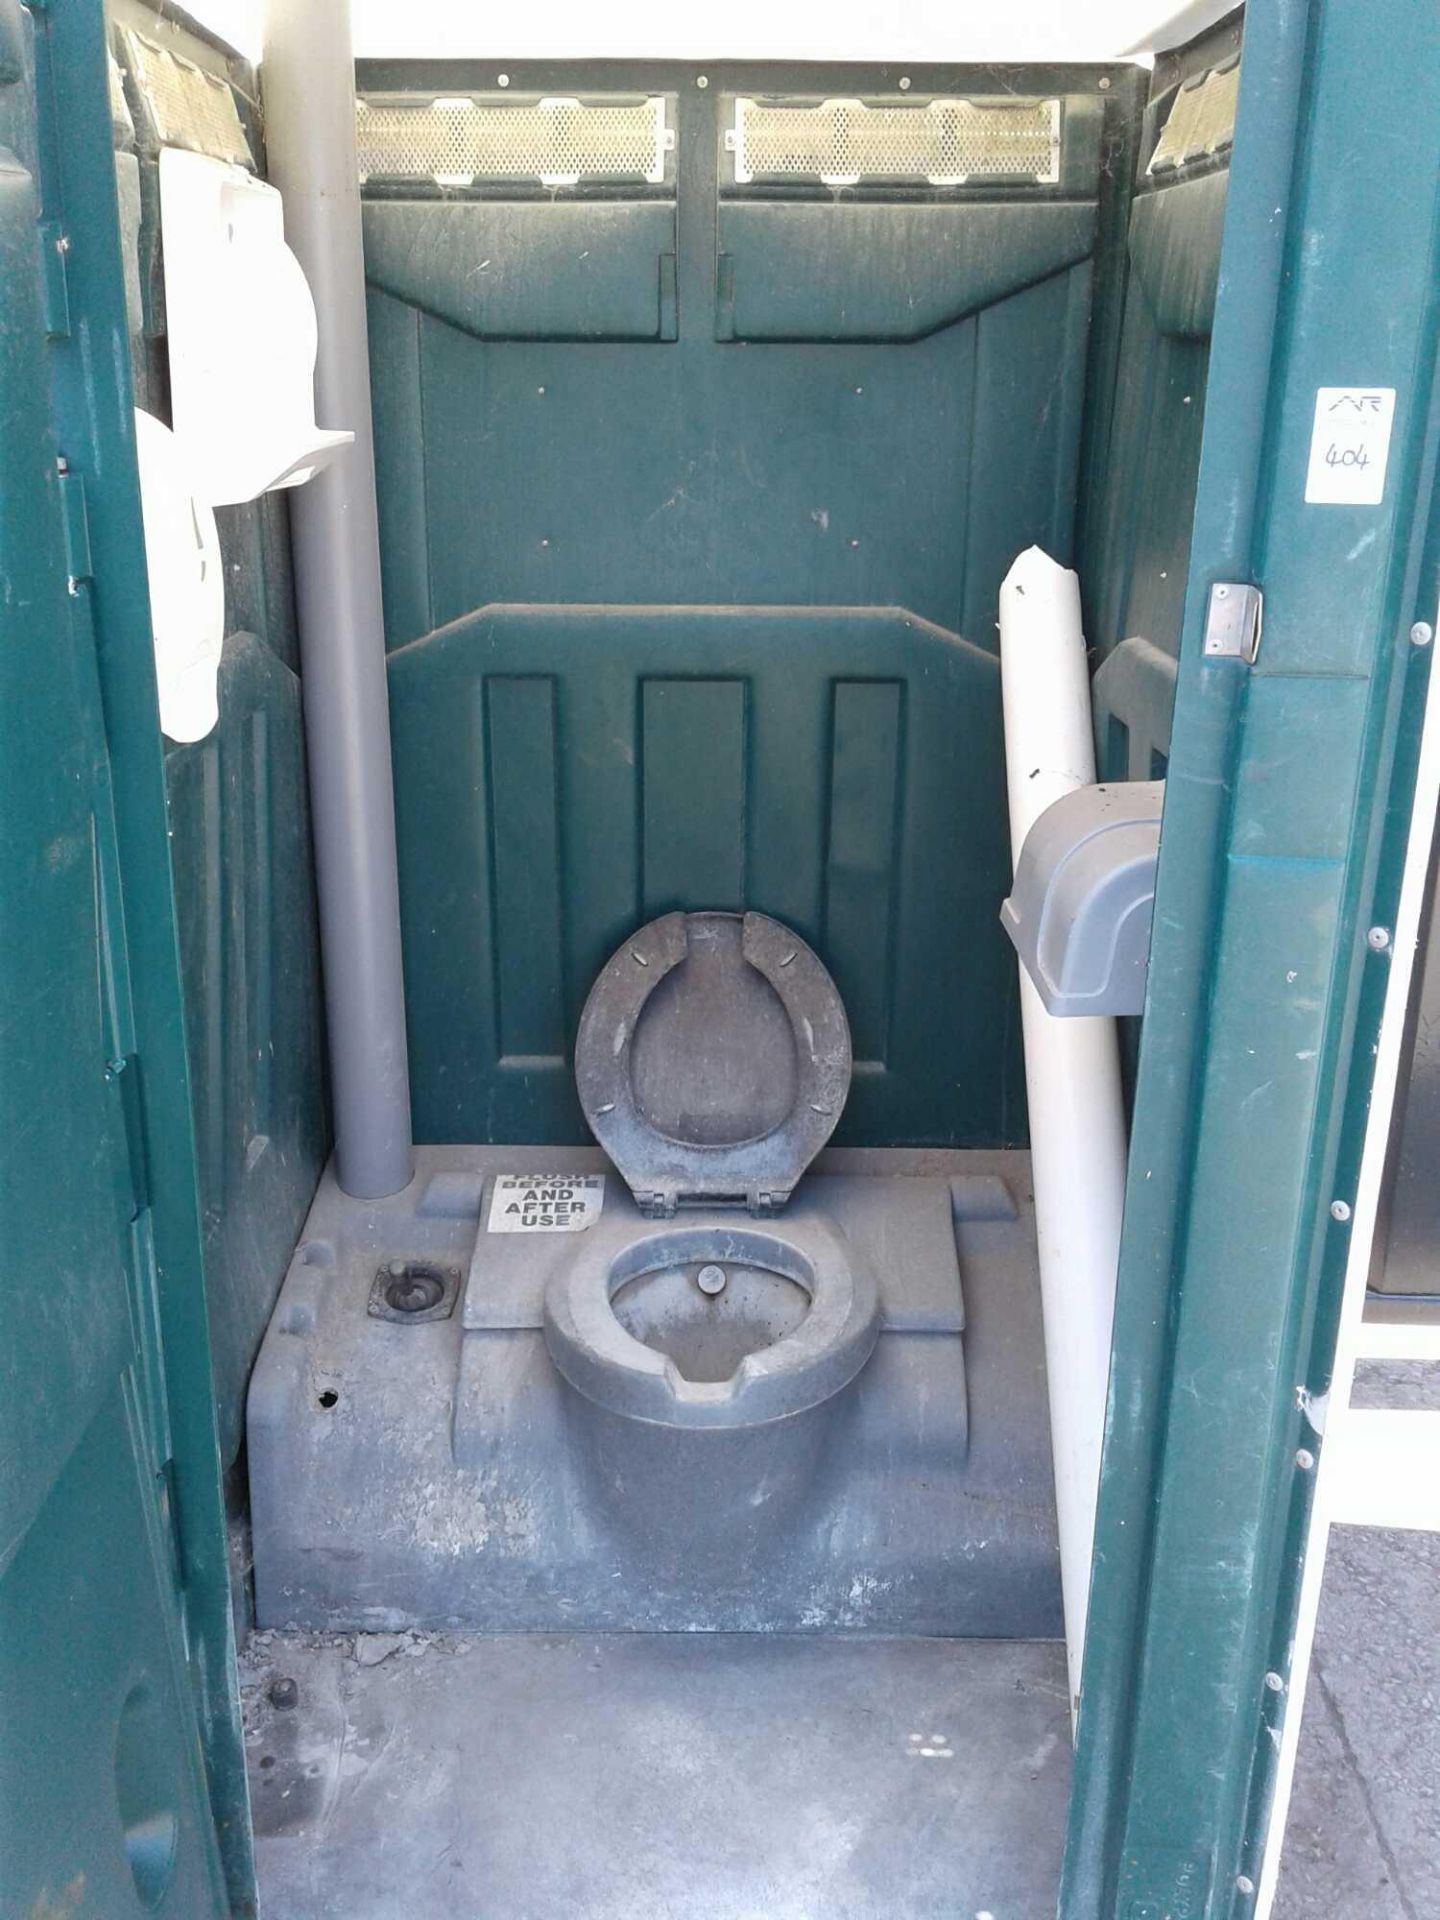 Portaloo portable toilet - Image 2 of 2